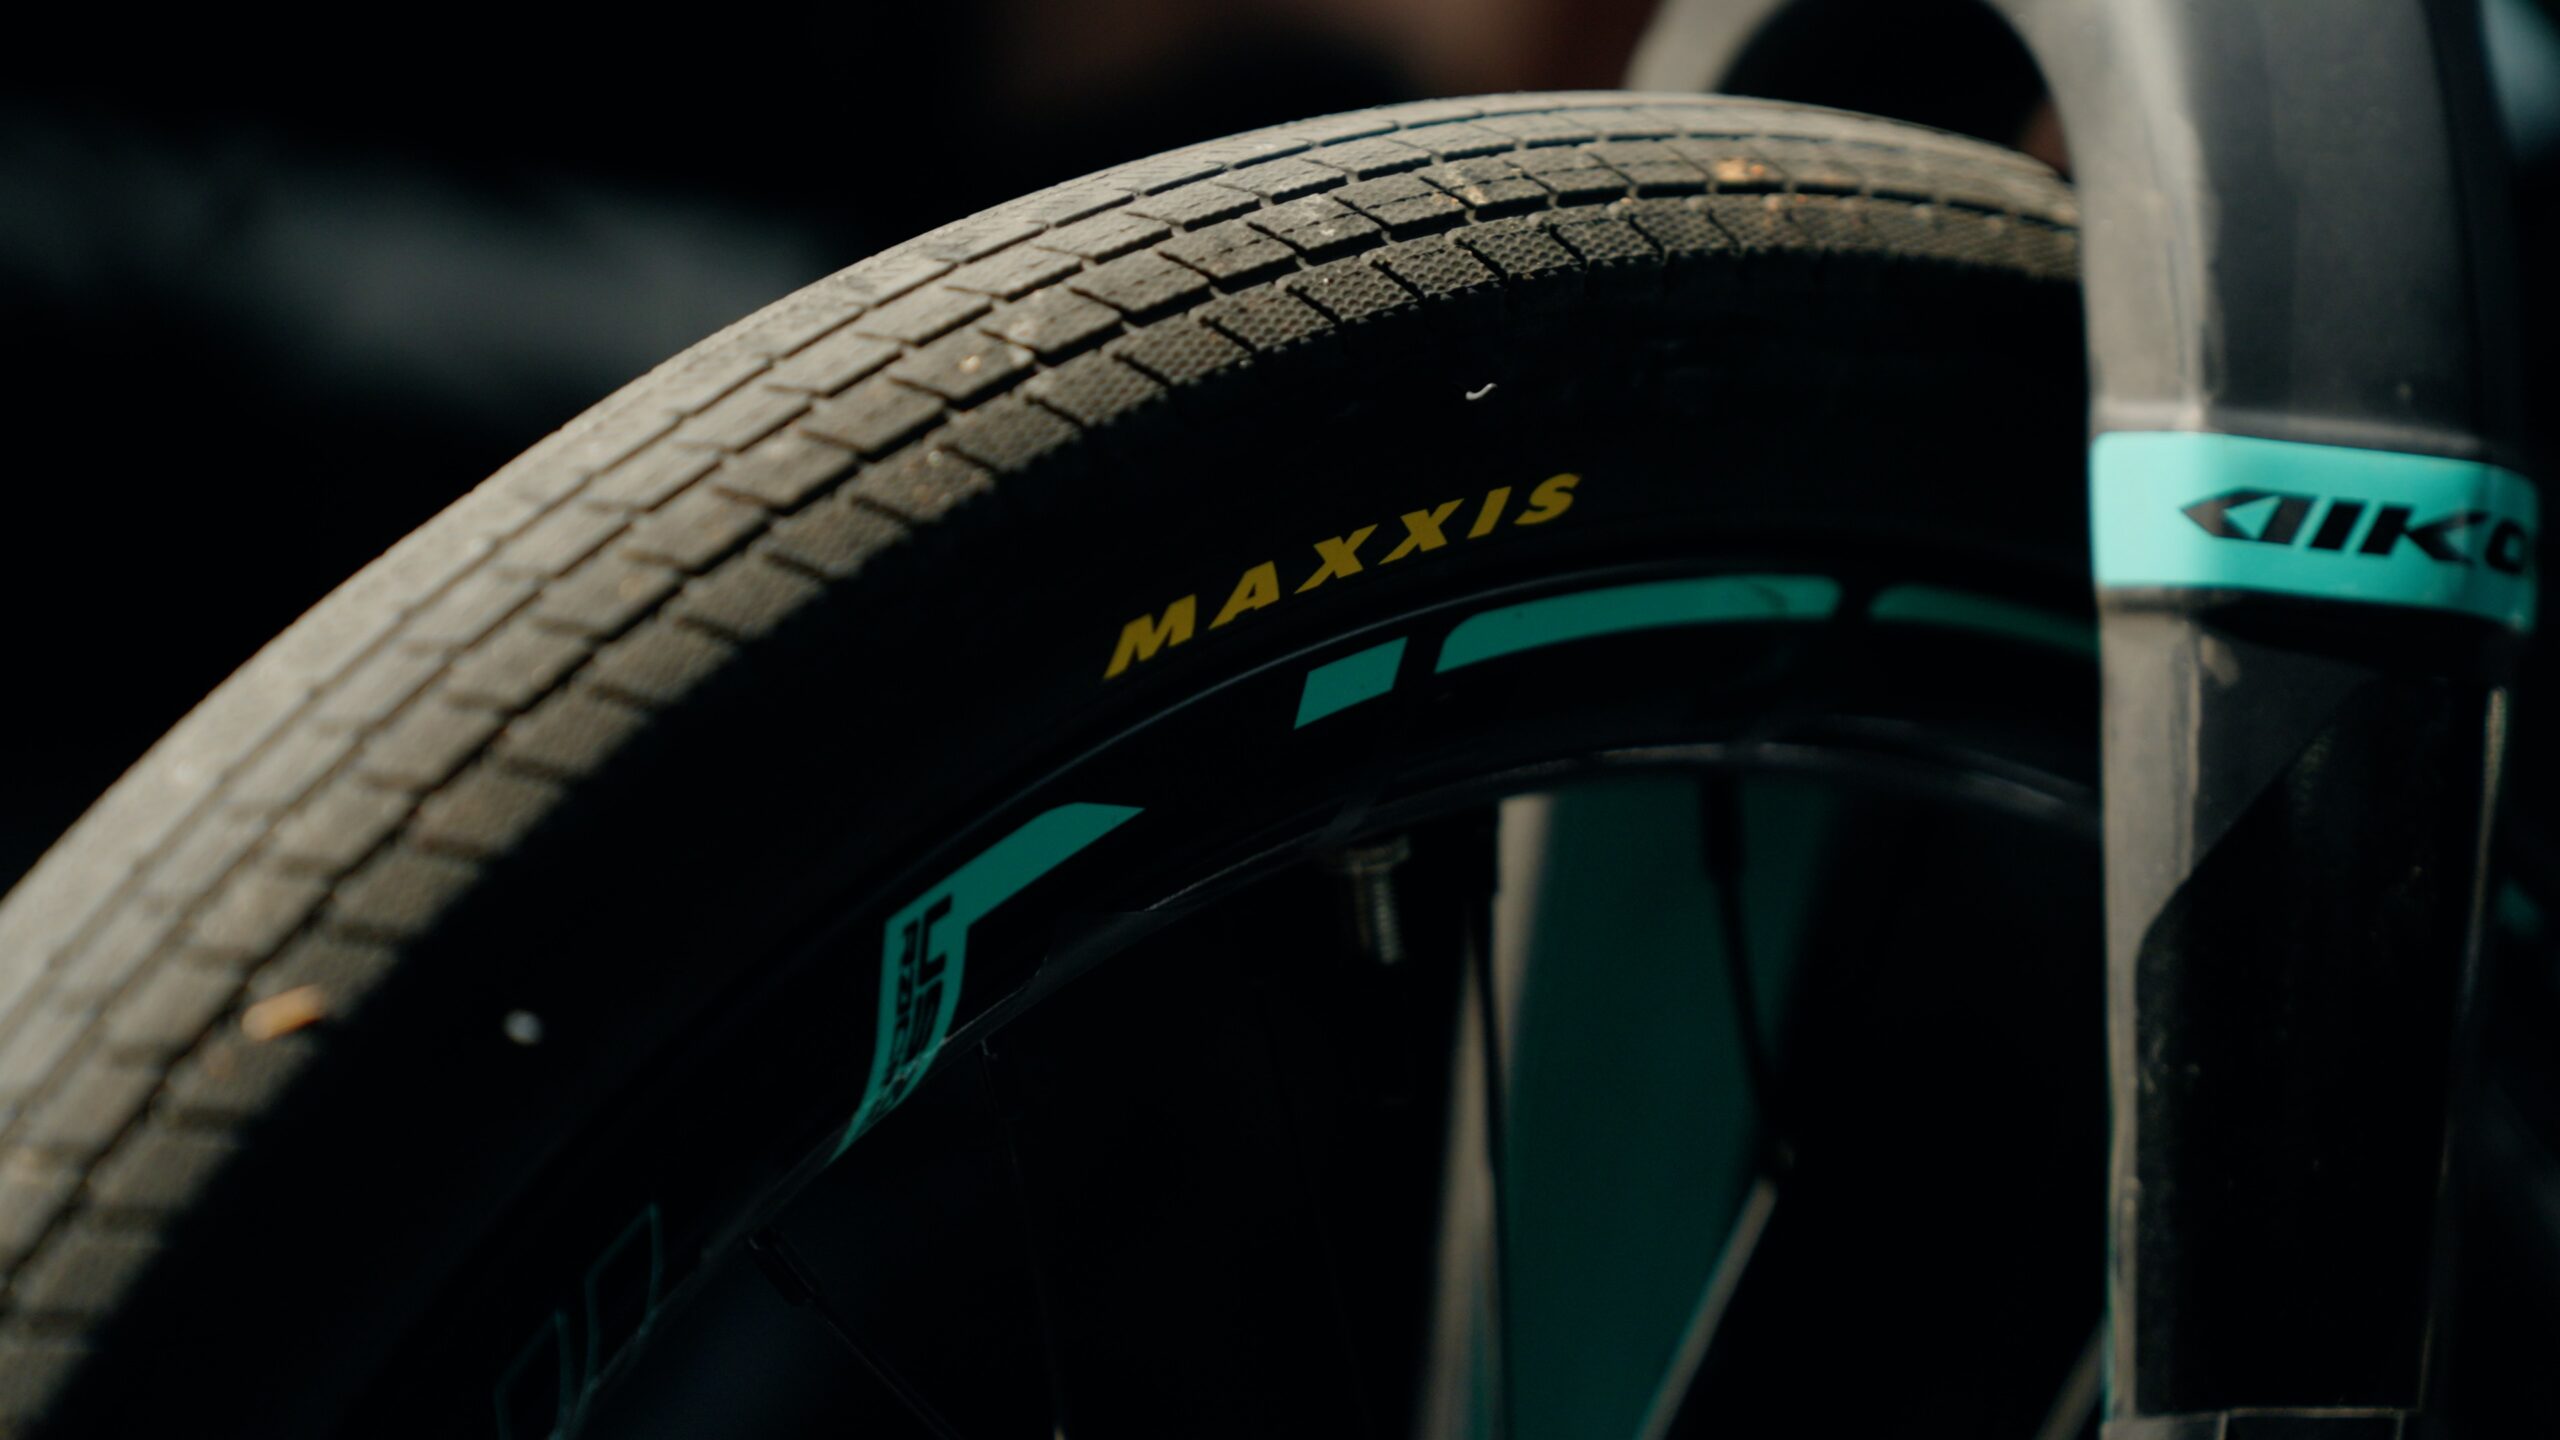 Maxxis bmx tire